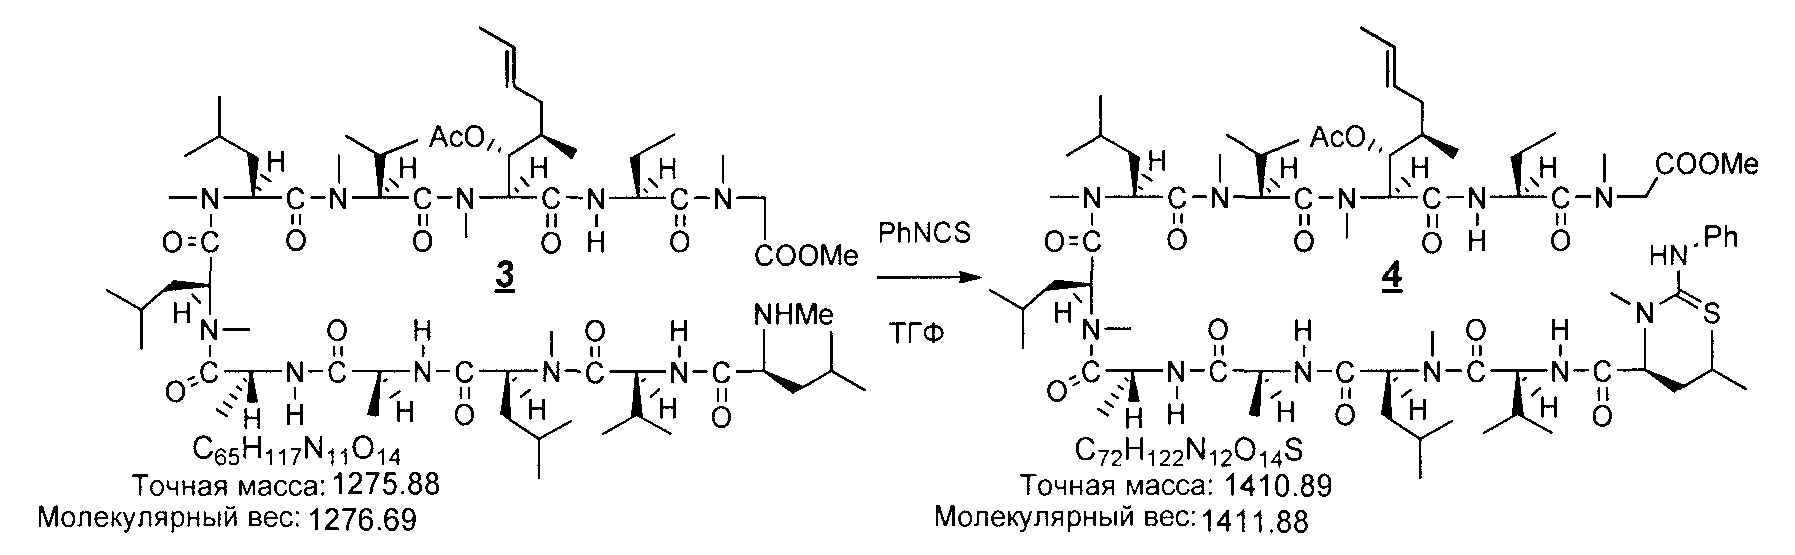 Полипептид 7. Тетрагидрофурана молекулярная масса. Молекулярная масса LIOH. Фенилтиомочевина формула. Декапептид-10 формула.